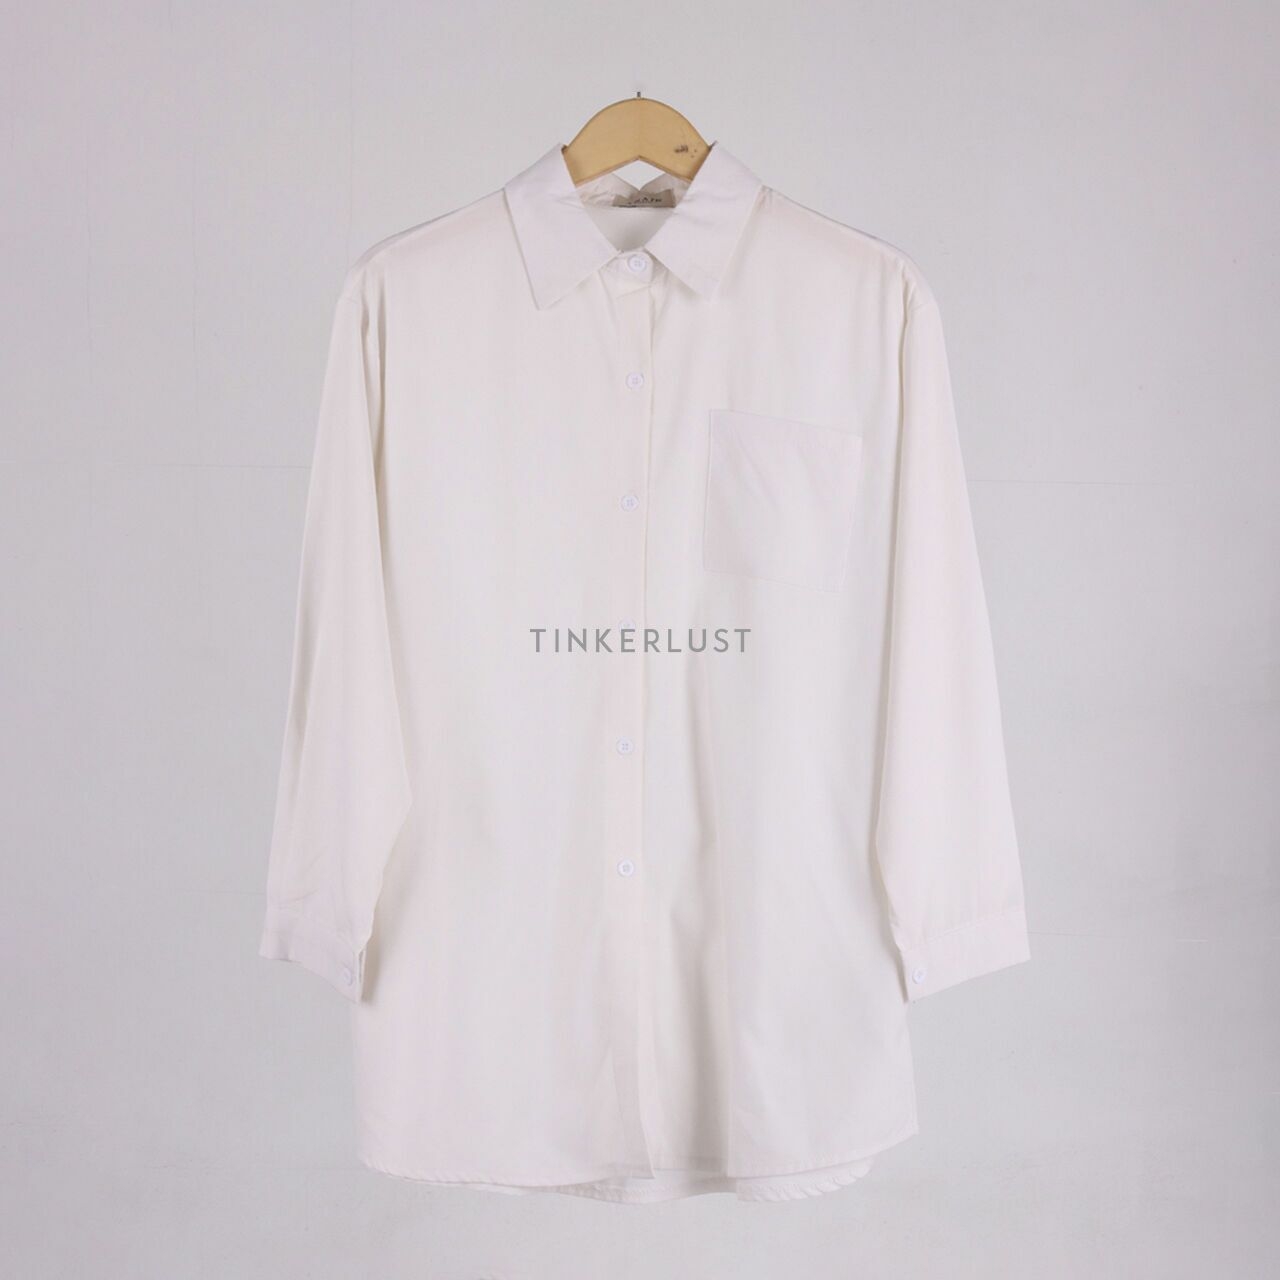 ANAIN White Shirt